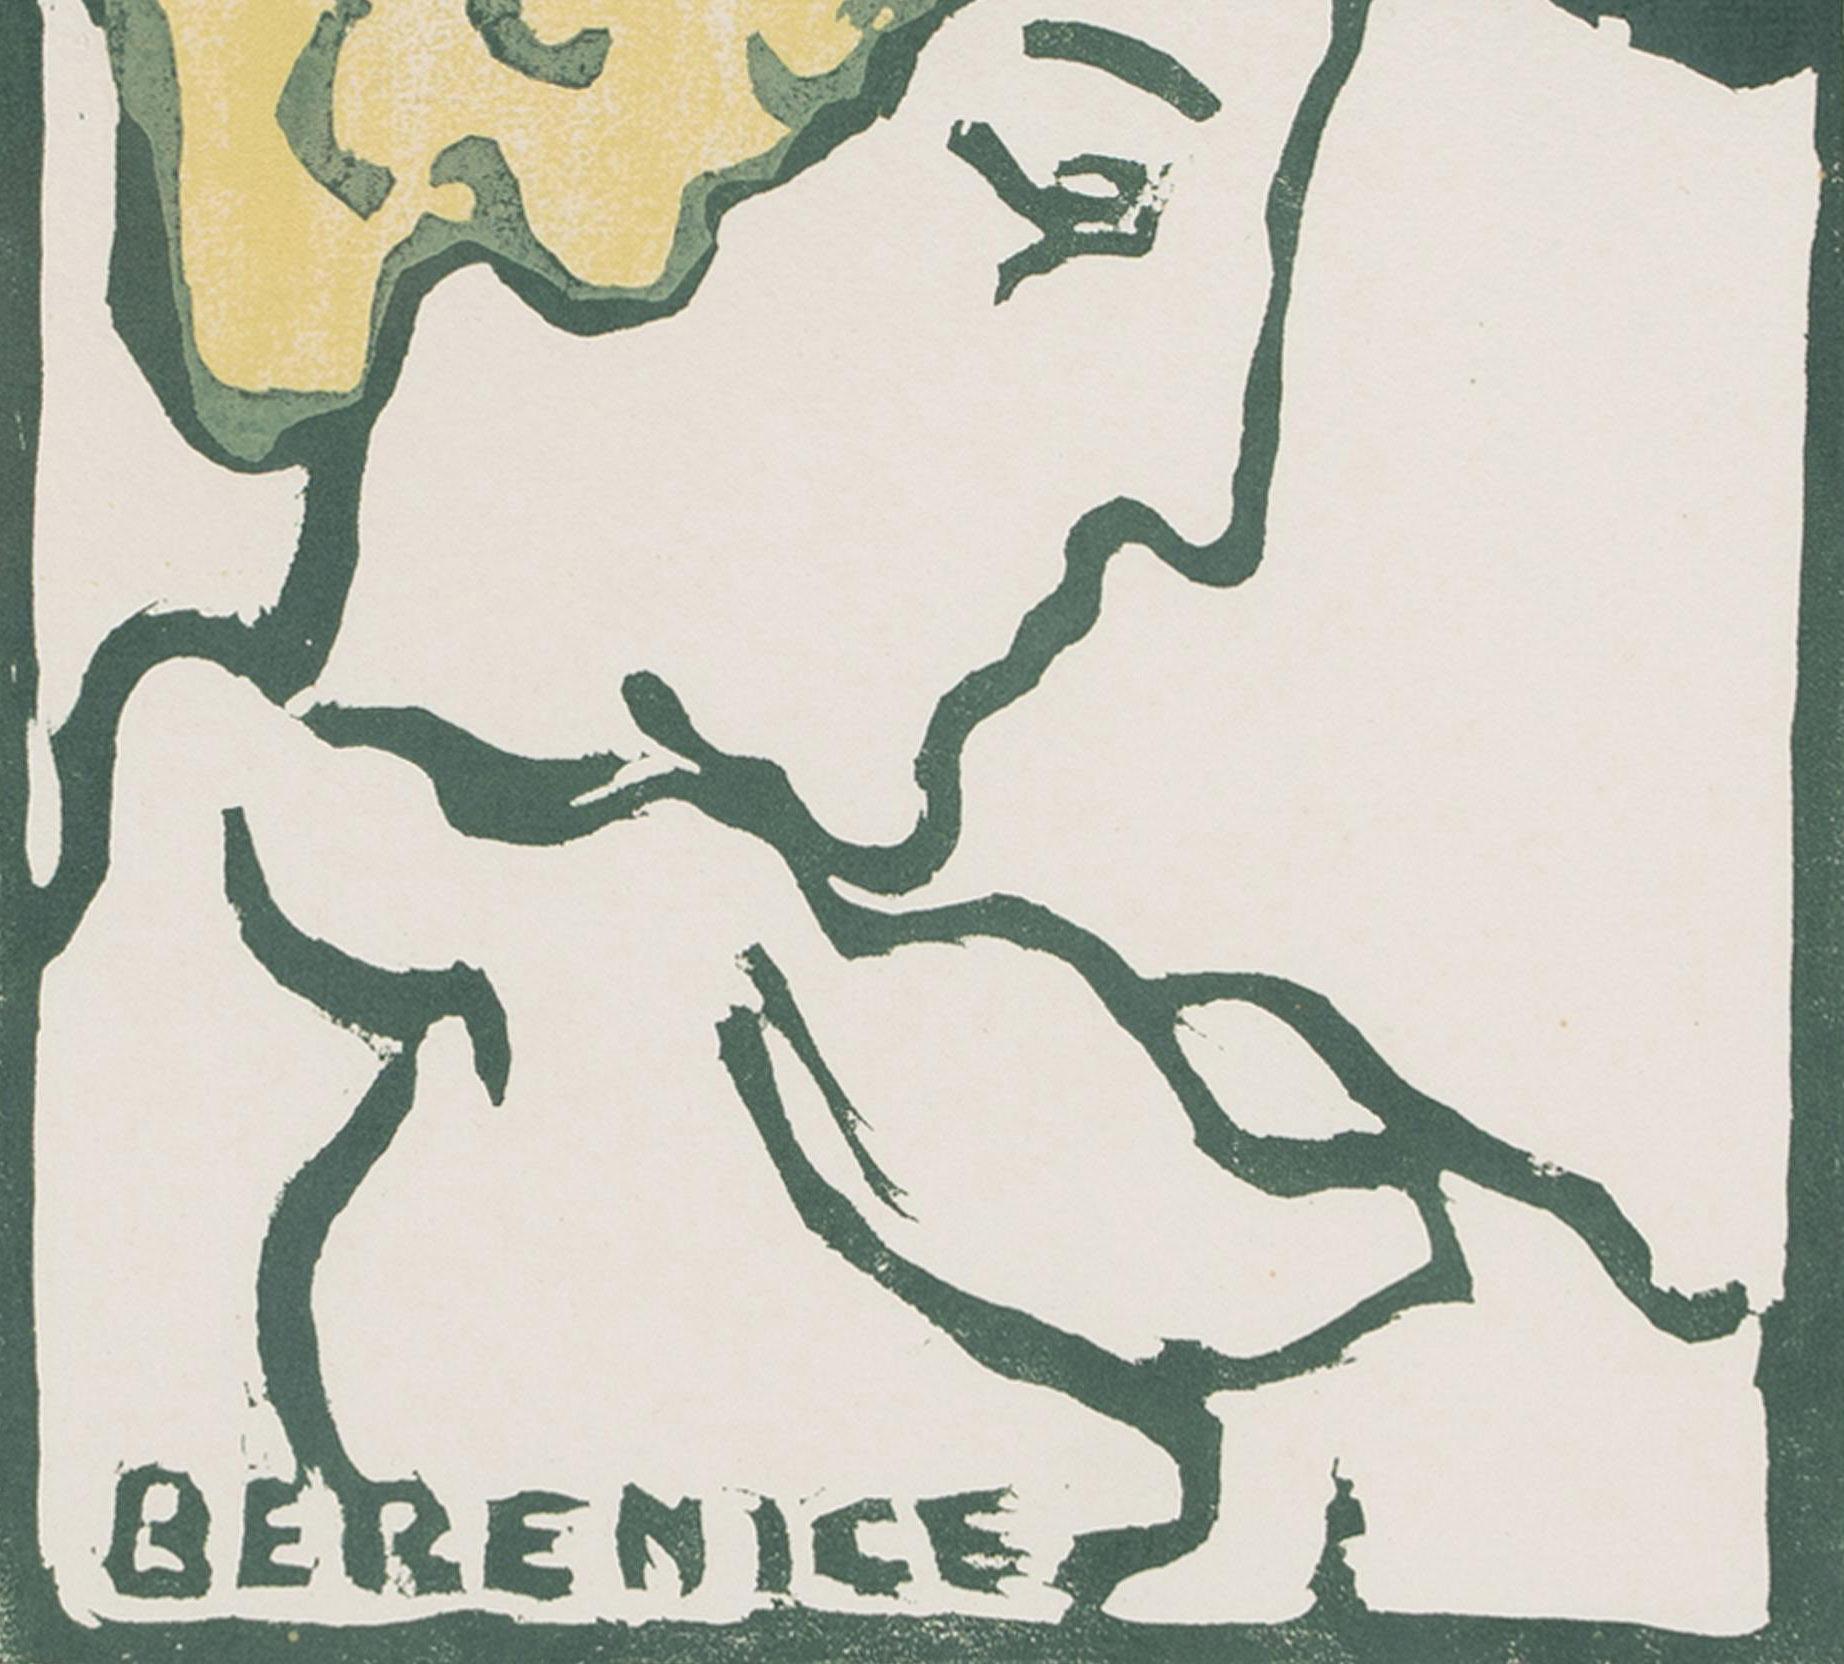 Bérénice
Gravure sur bois en couleur, 1900-1910
Signé avec le cachet à l'encre rouge de l'artiste (voir photo).
Edition : 50 (46/50)
Signé avec le cachet initial à l'encre rouge de l'artiste, Lugt 1771, Sup.
Condit : Excellent
Taille de l'image/du